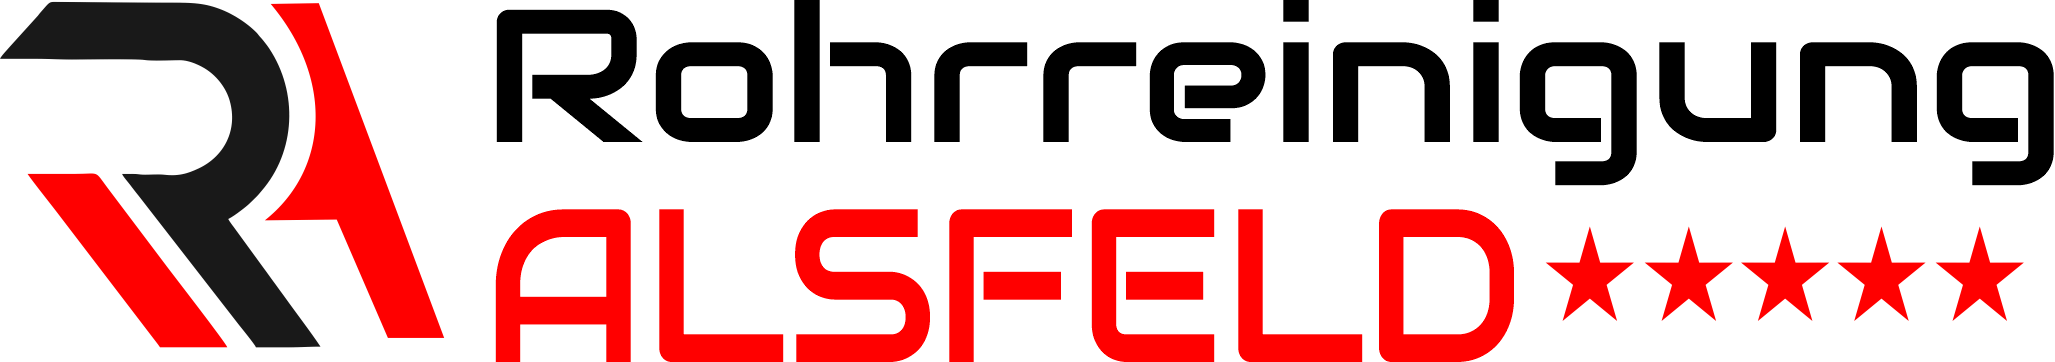 Rohrreinigung Alsfeld Logo